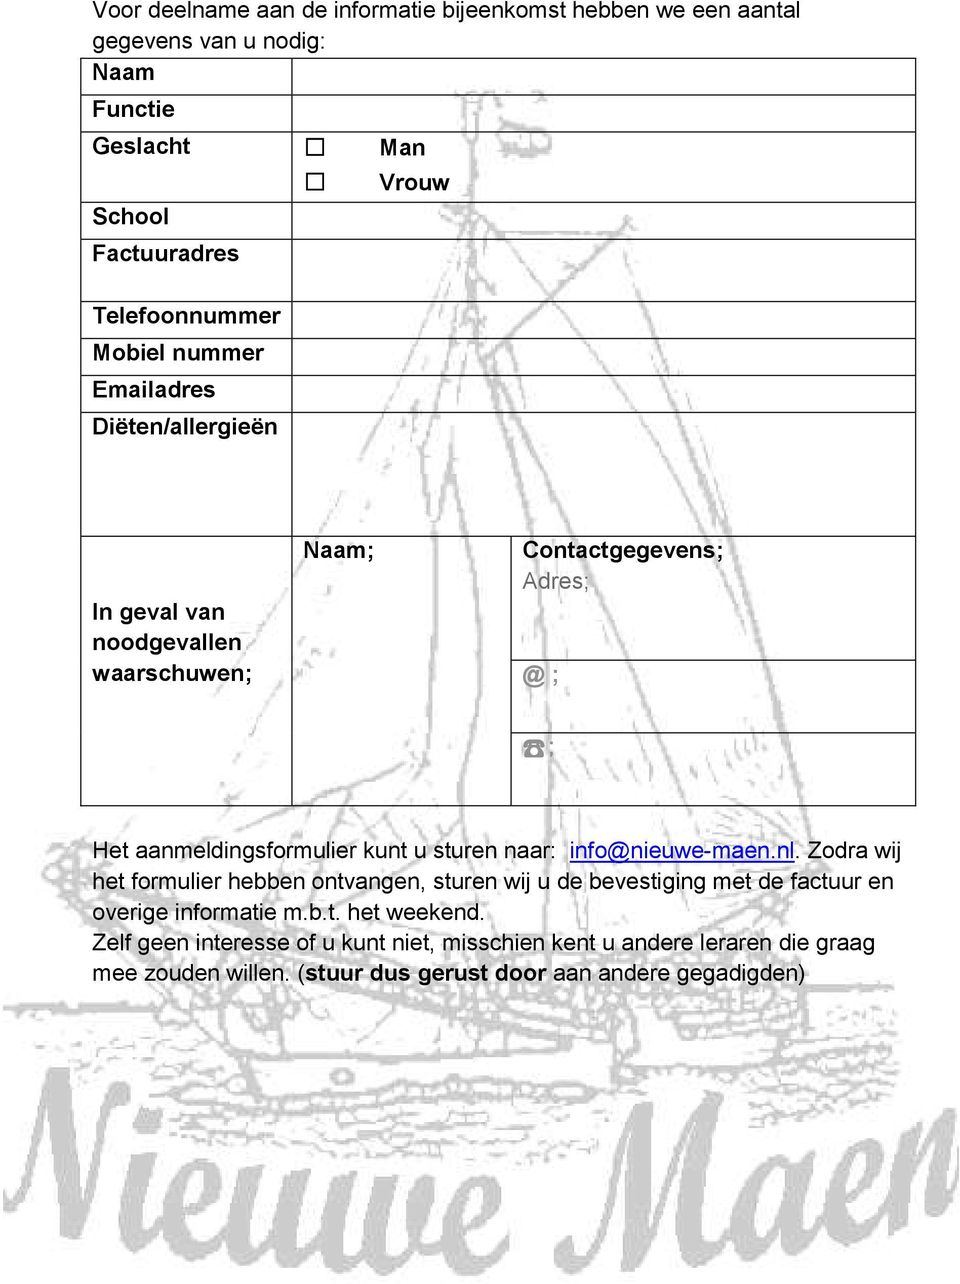 aanmeldingsformulier kunt u sturen naar: info@nieuwe-maen.nl.